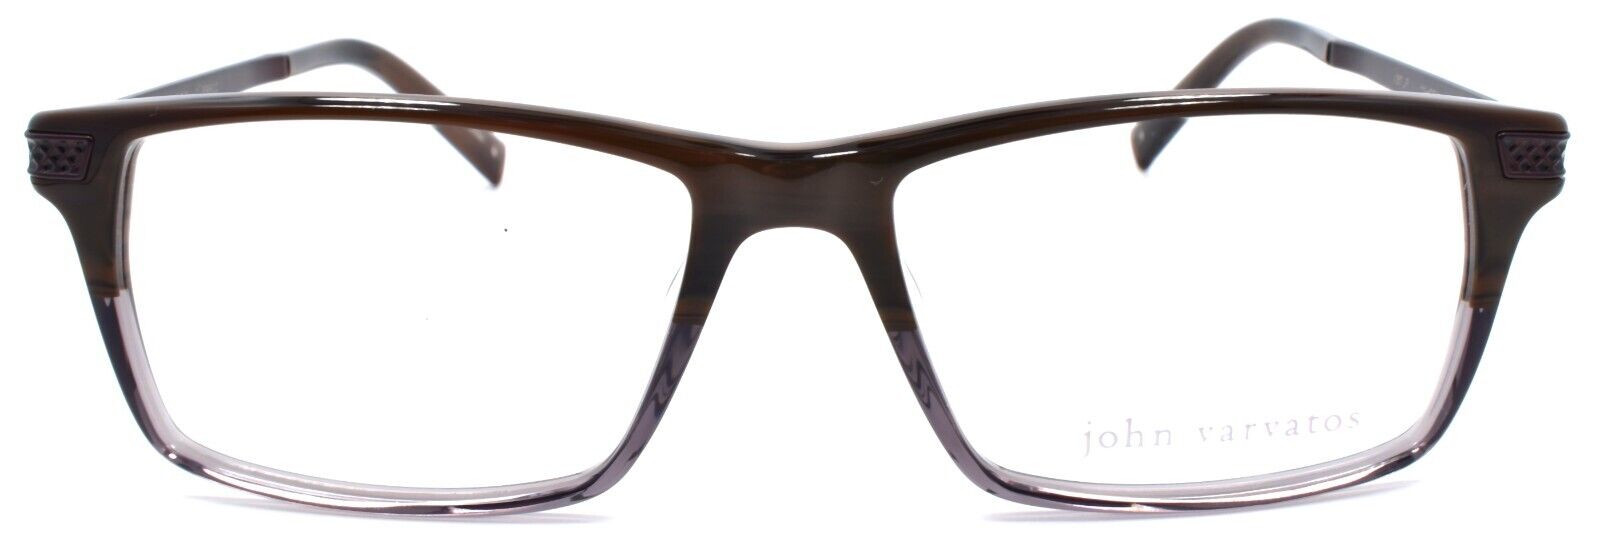 2-John Varvatos V367 UF Men's Eyeglasses Frames 55-17-145 Mahogany Japan-751286293296-IKSpecs